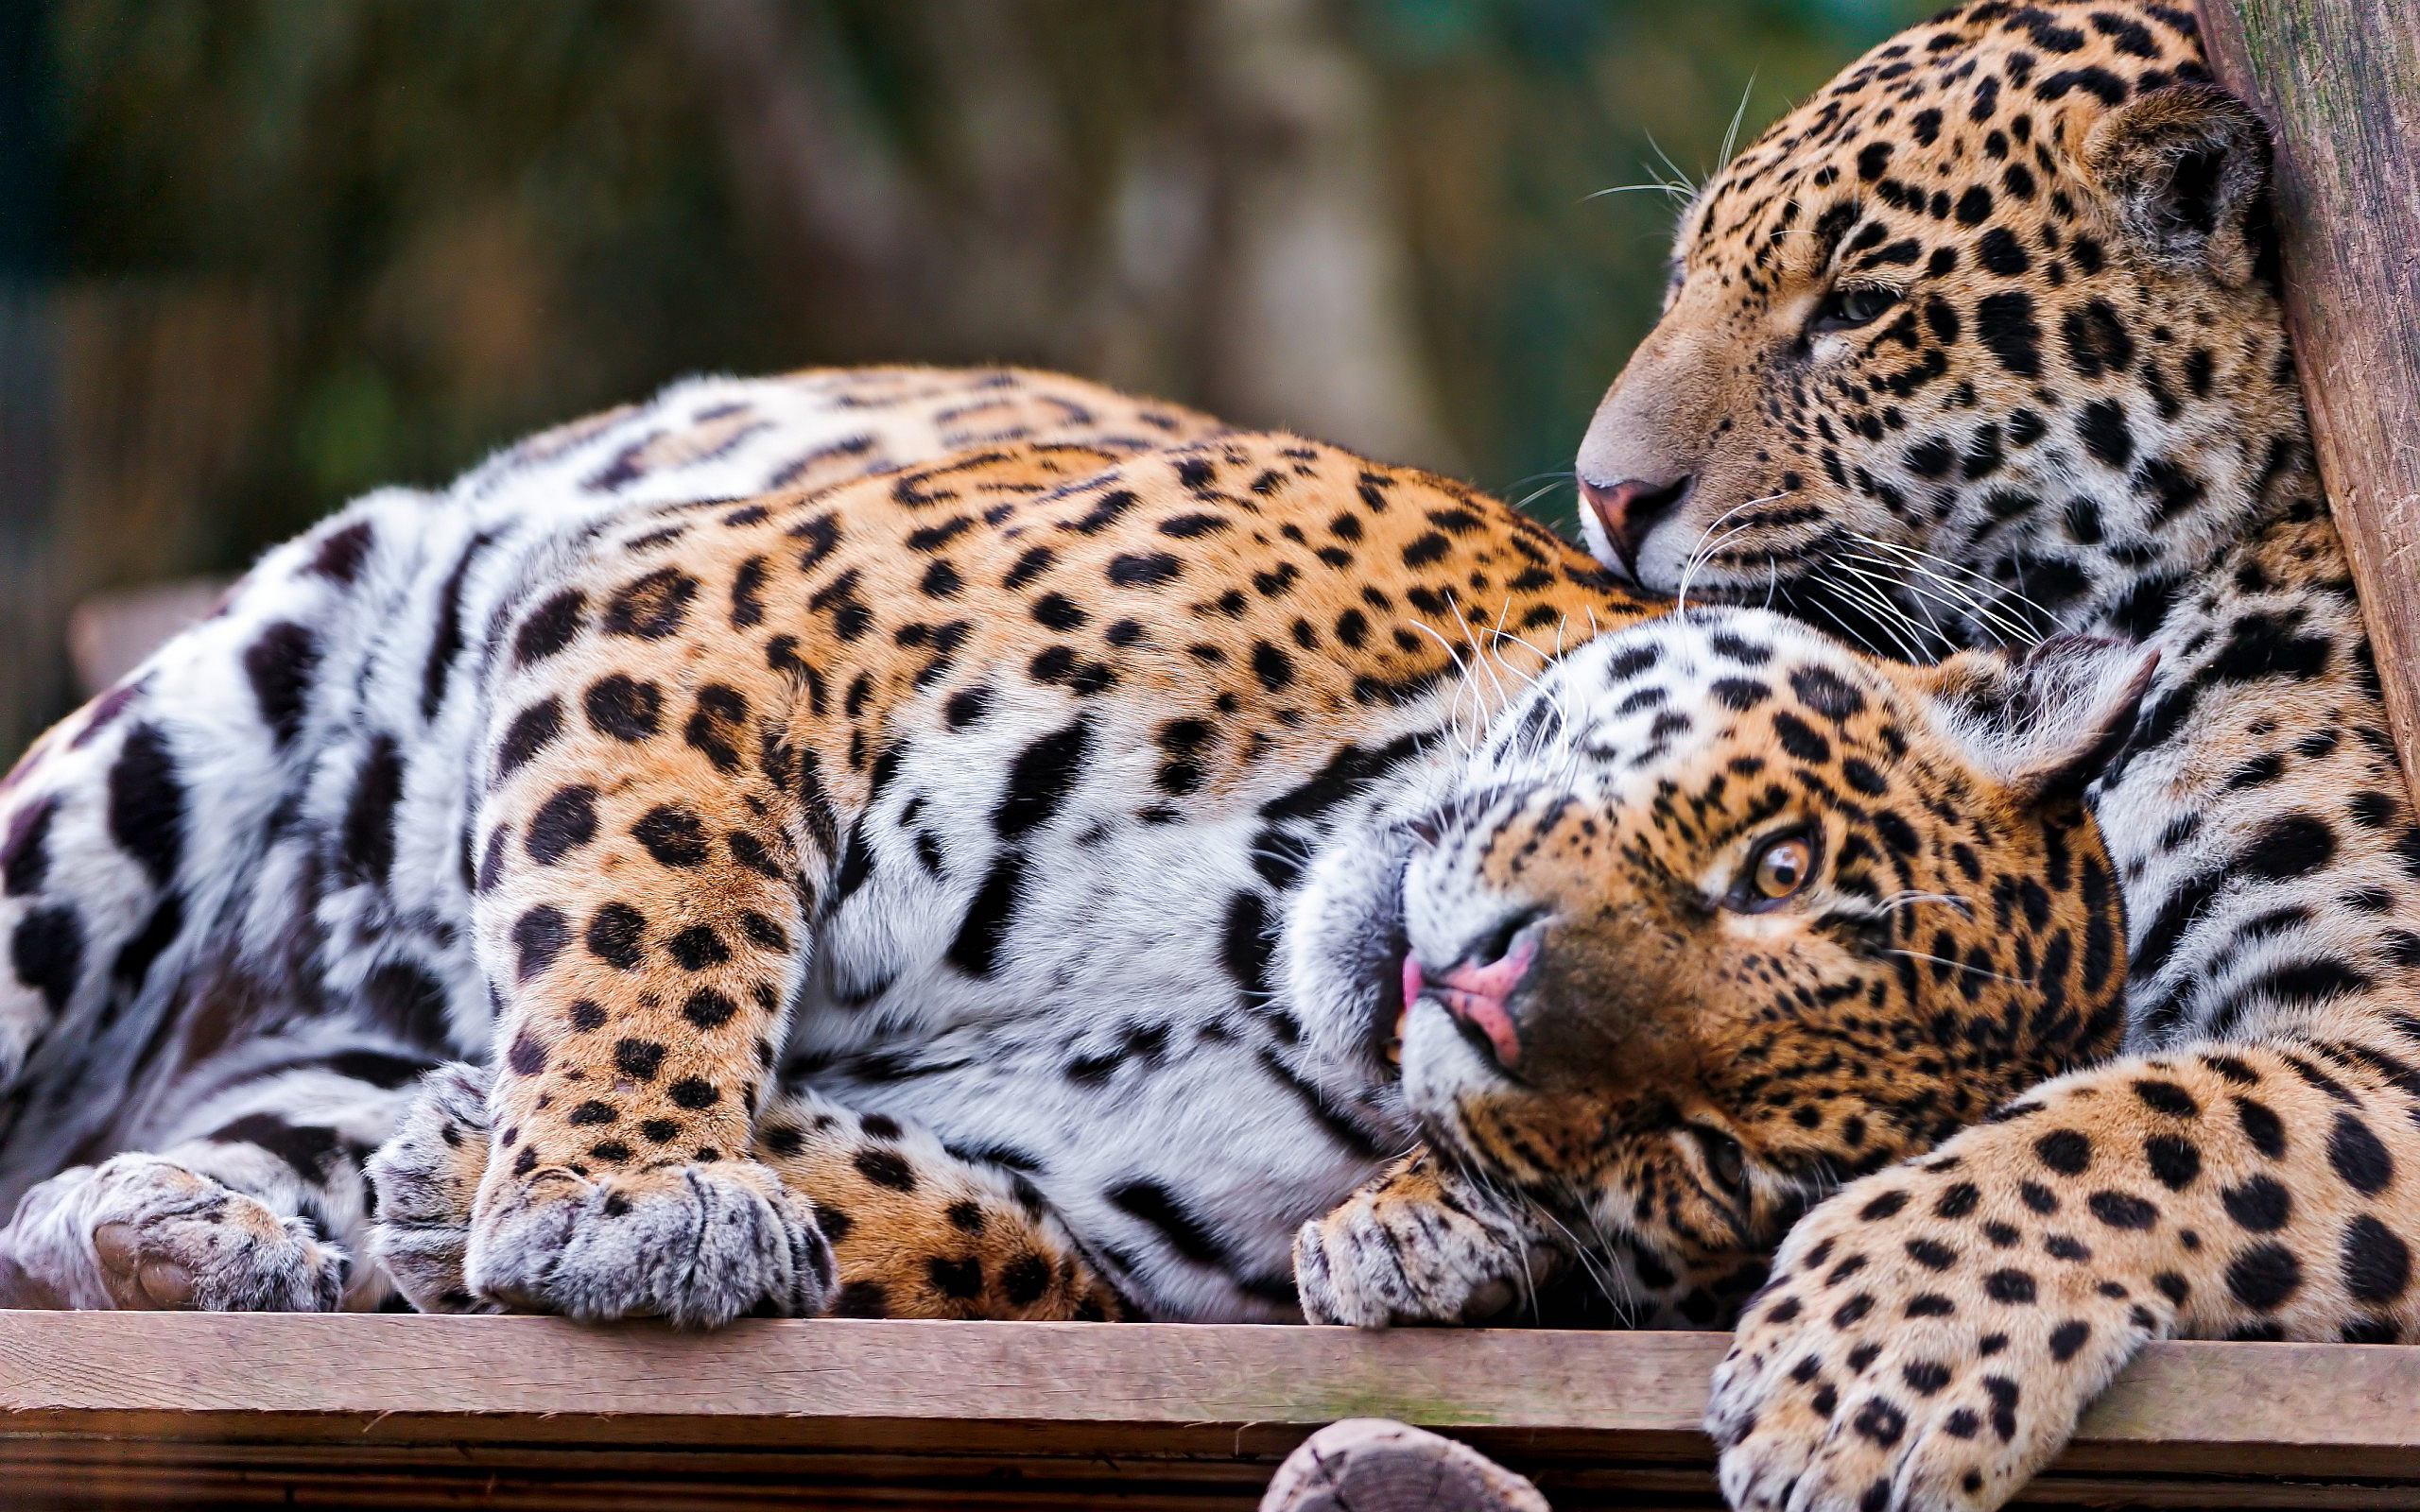 Leopards cuddle